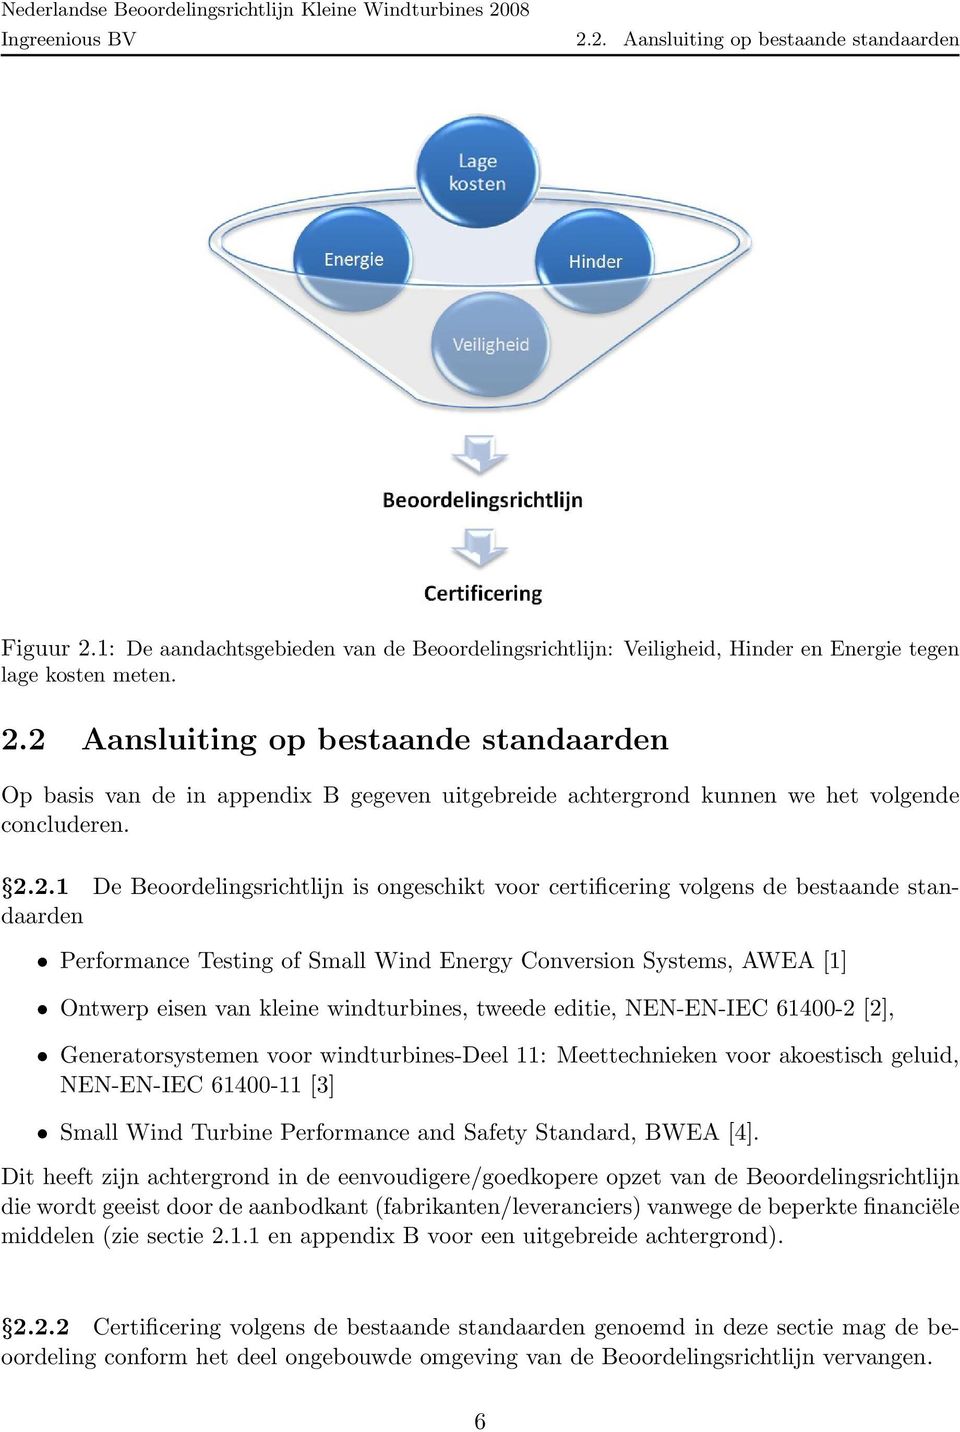 windturbines, tweede editie, NEN-EN-IEC 61400-2 [2], Generatorsystemen voor windturbines-deel 11: Meettechnieken voor akoestisch geluid, NEN-EN-IEC 61400-11 [3] Small Wind Turbine Performance and